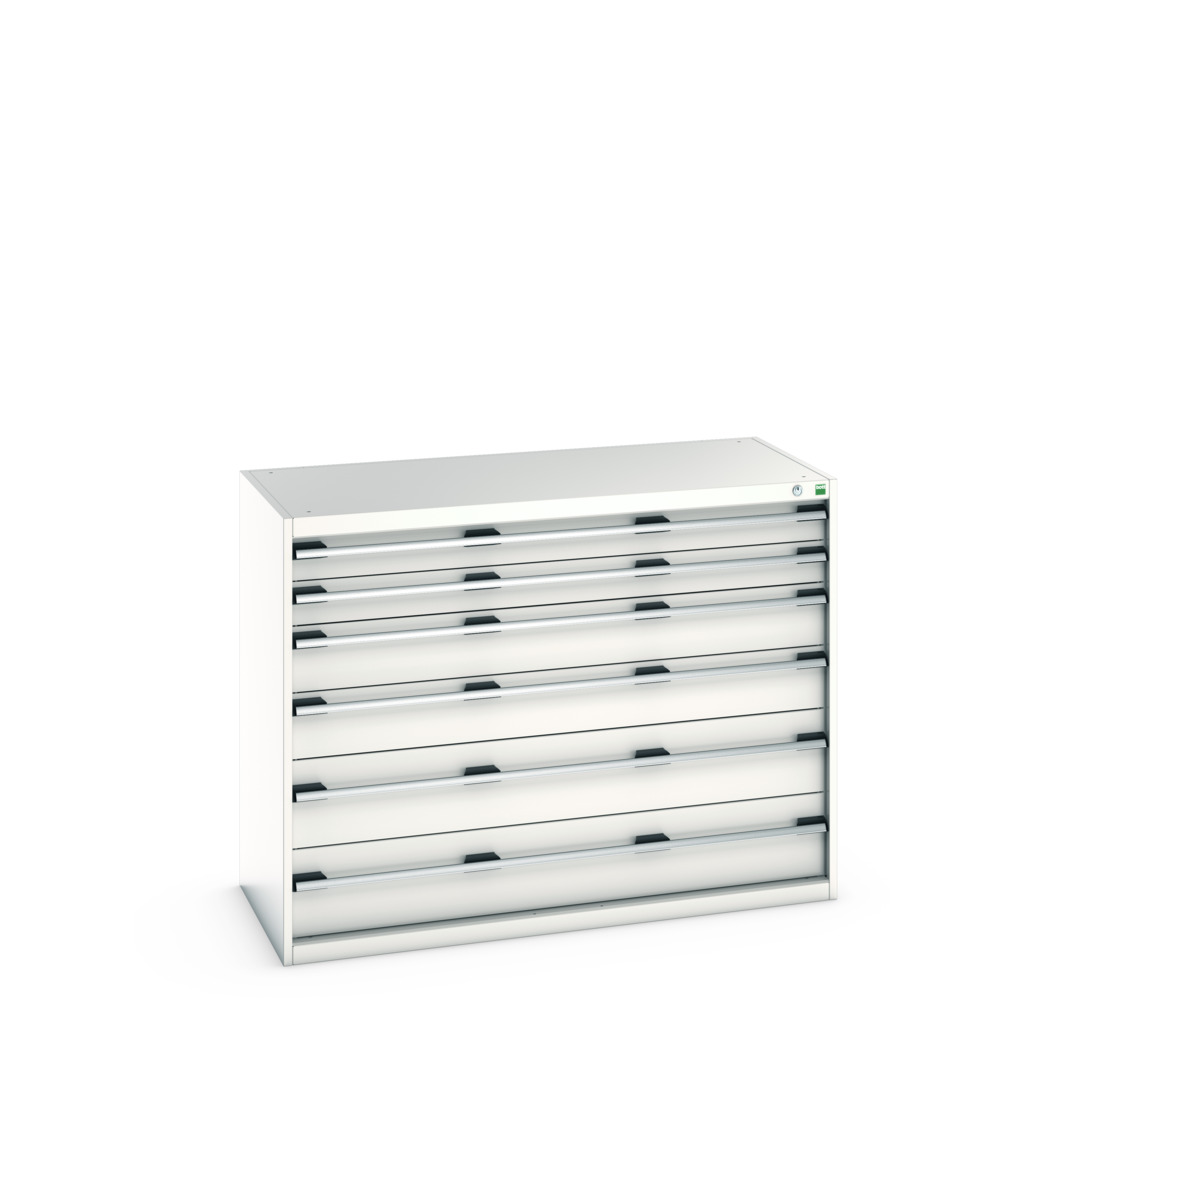 40022123.16V - cubio drawer cabinet